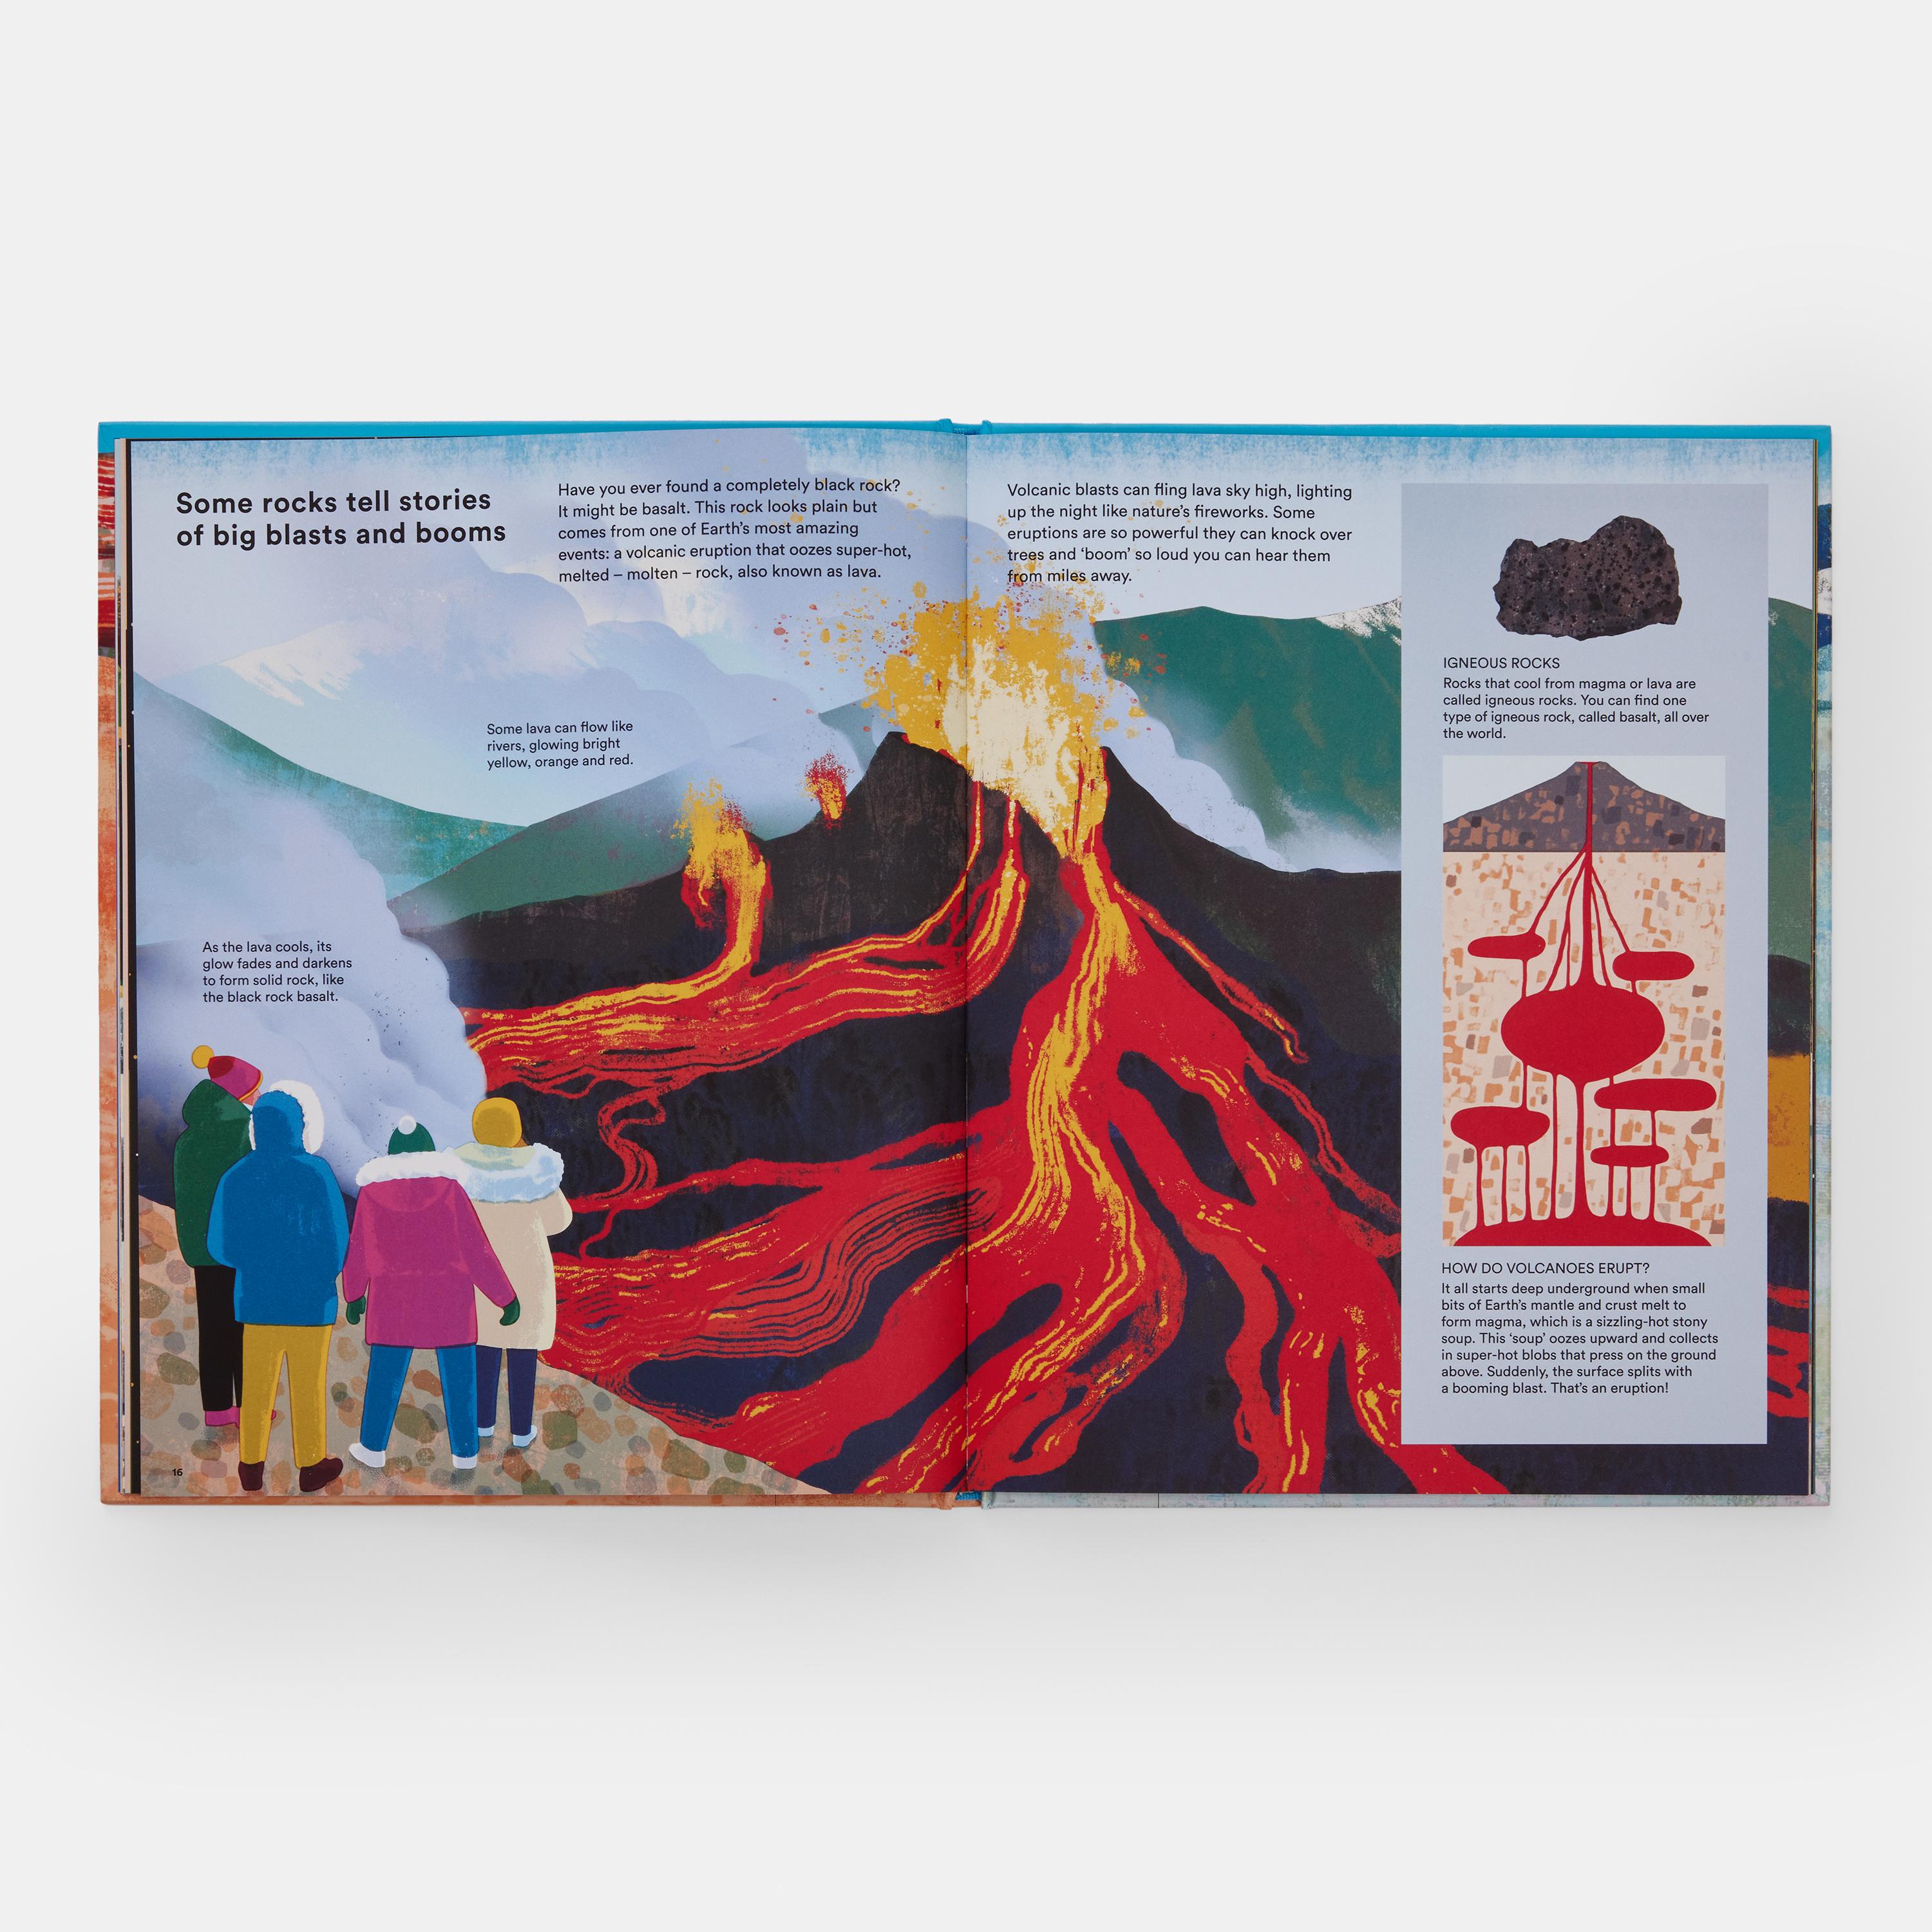 Une introduction informative, superbement illustrée, aux merveilles des roches et des minéraux et à ce qu'ils peuvent nous apprendre sur notre planète - parfait pour les lecteurs de 6 à 9 ans.

Maya Wei-Haas, écrivain scientifique et géologue